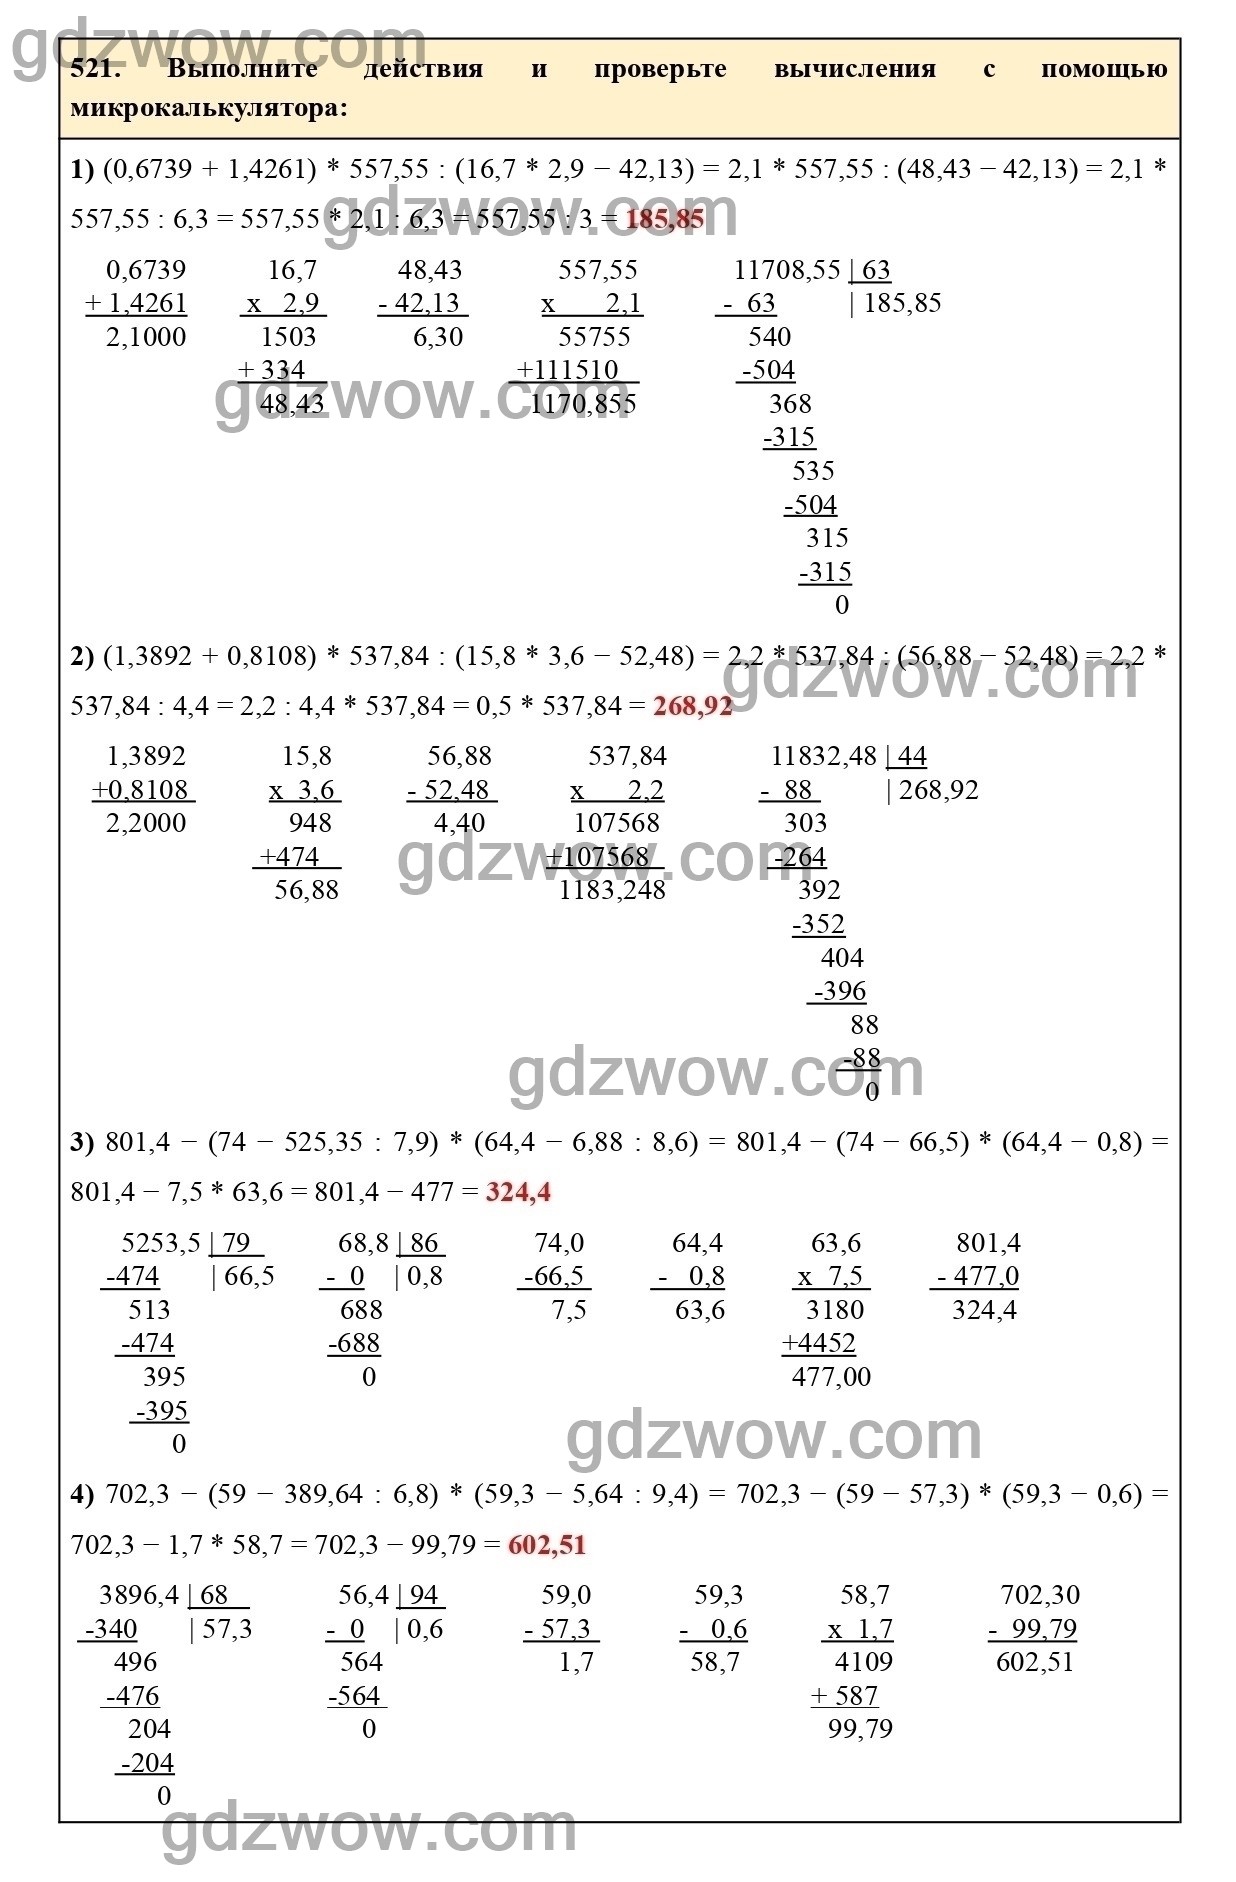 Номер 526 - ГДЗ по Математике 6 класс Учебник Виленкин, Жохов, Чесноков, Шварцбурд 2020. Часть 1 (решебник) - GDZwow